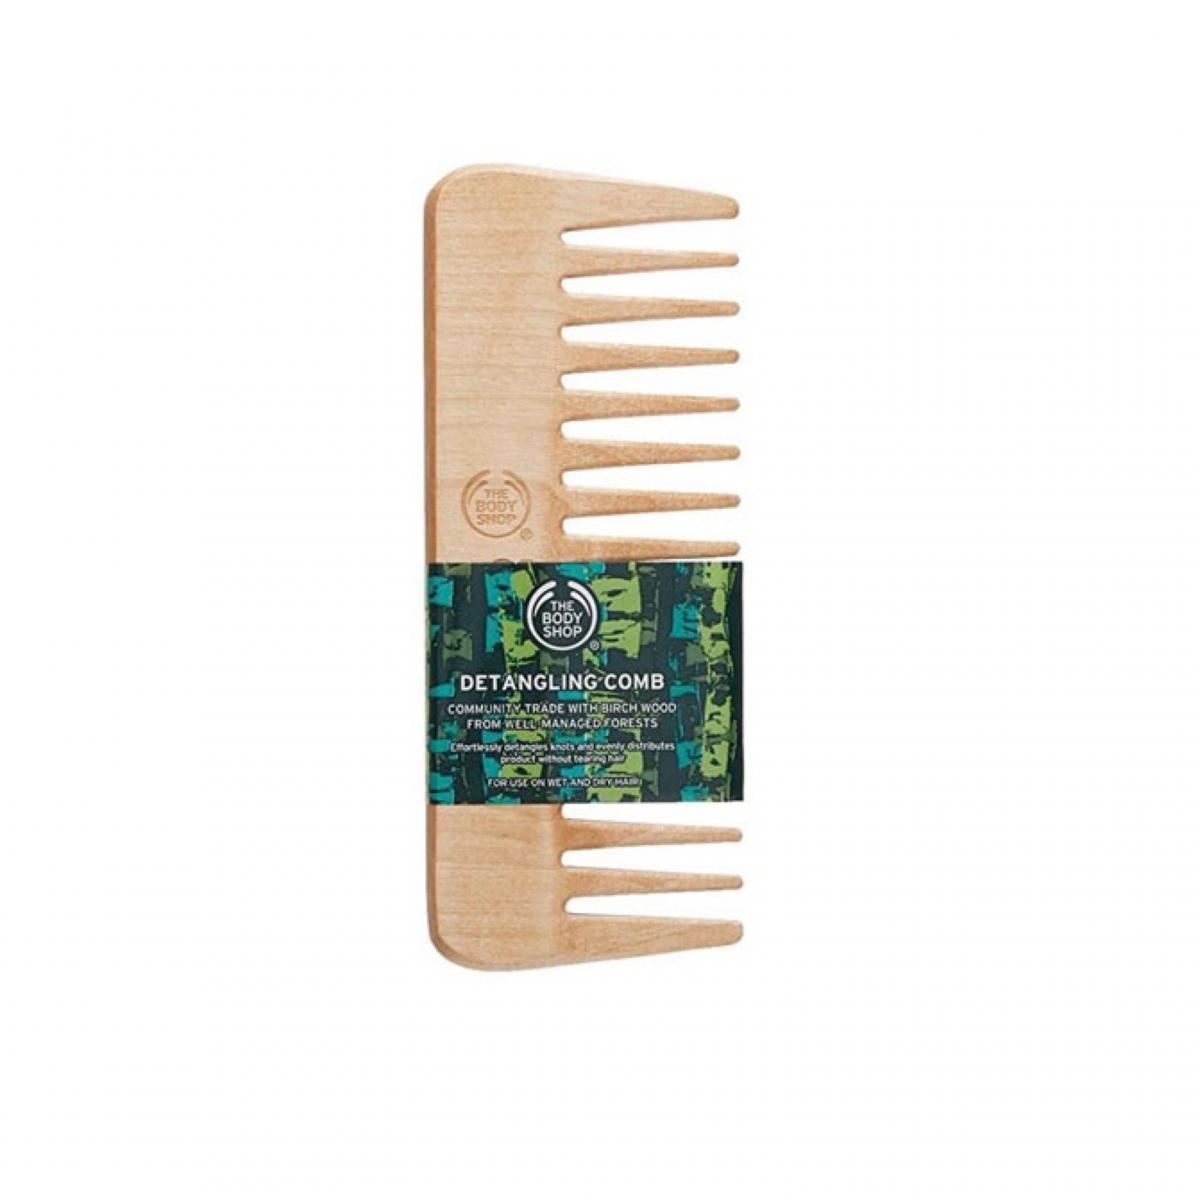 شانه چوبی - Detangling comb